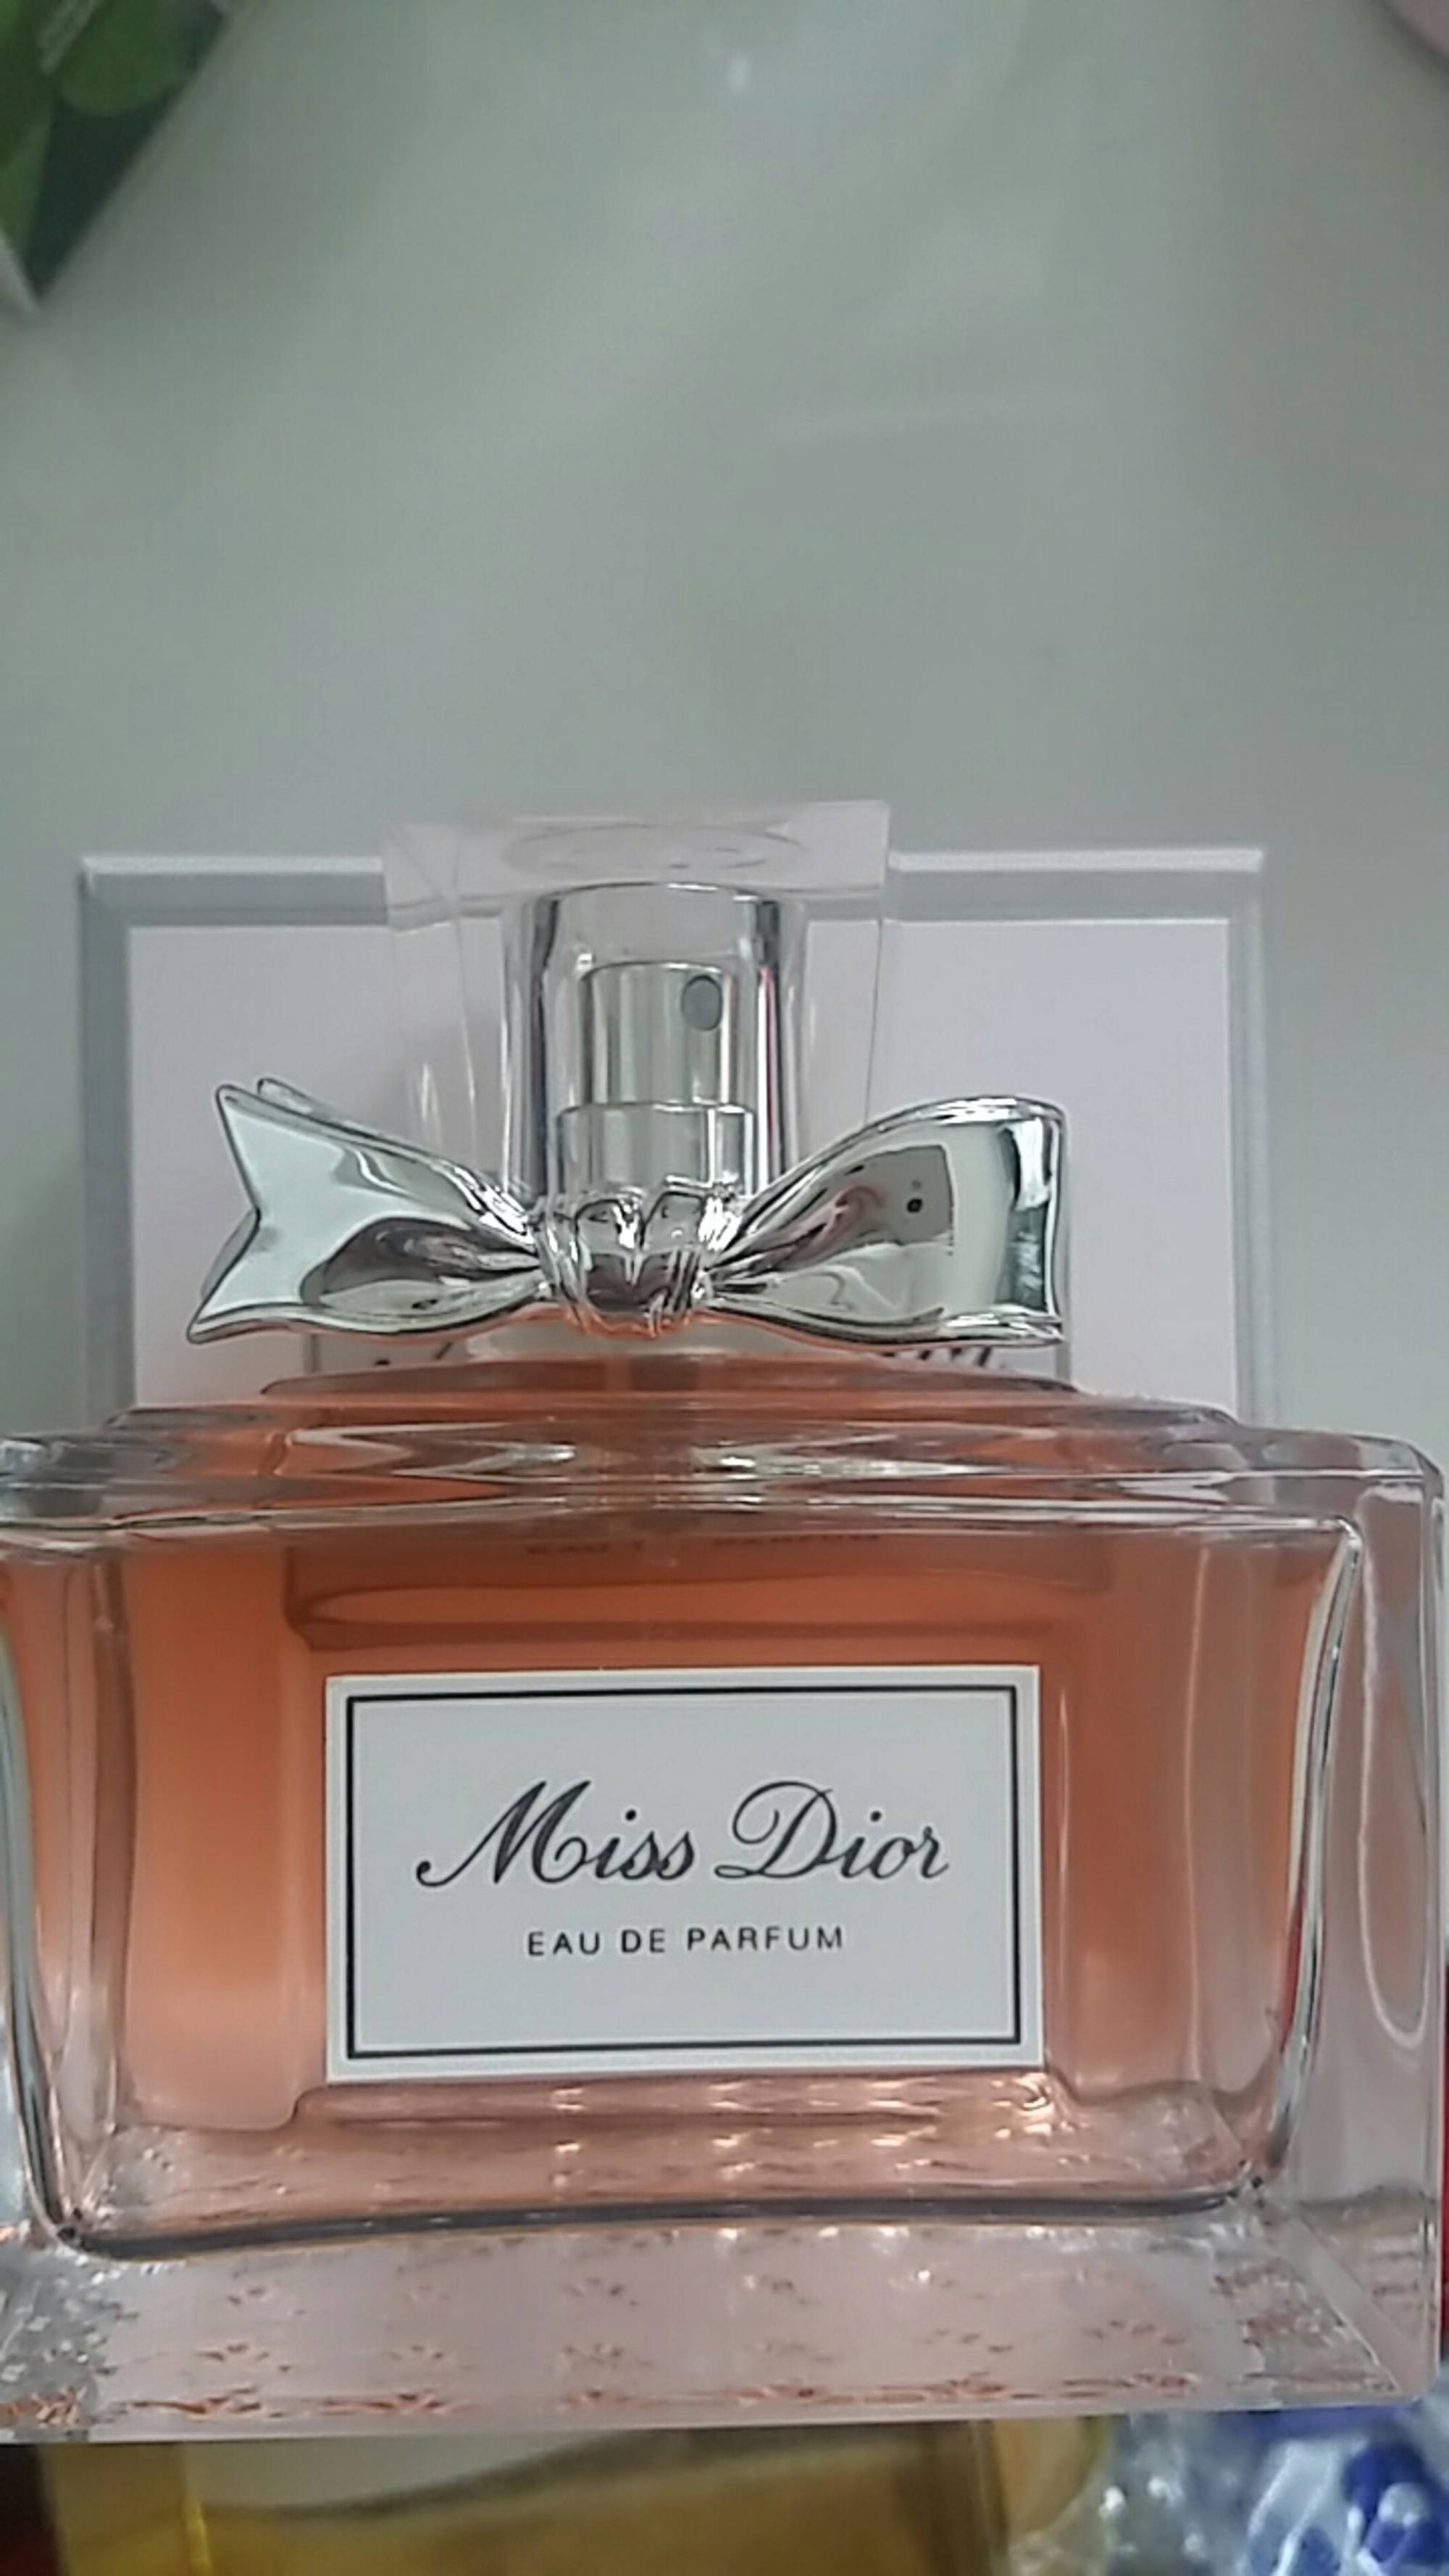 MISS DIOR - Eau de parfum